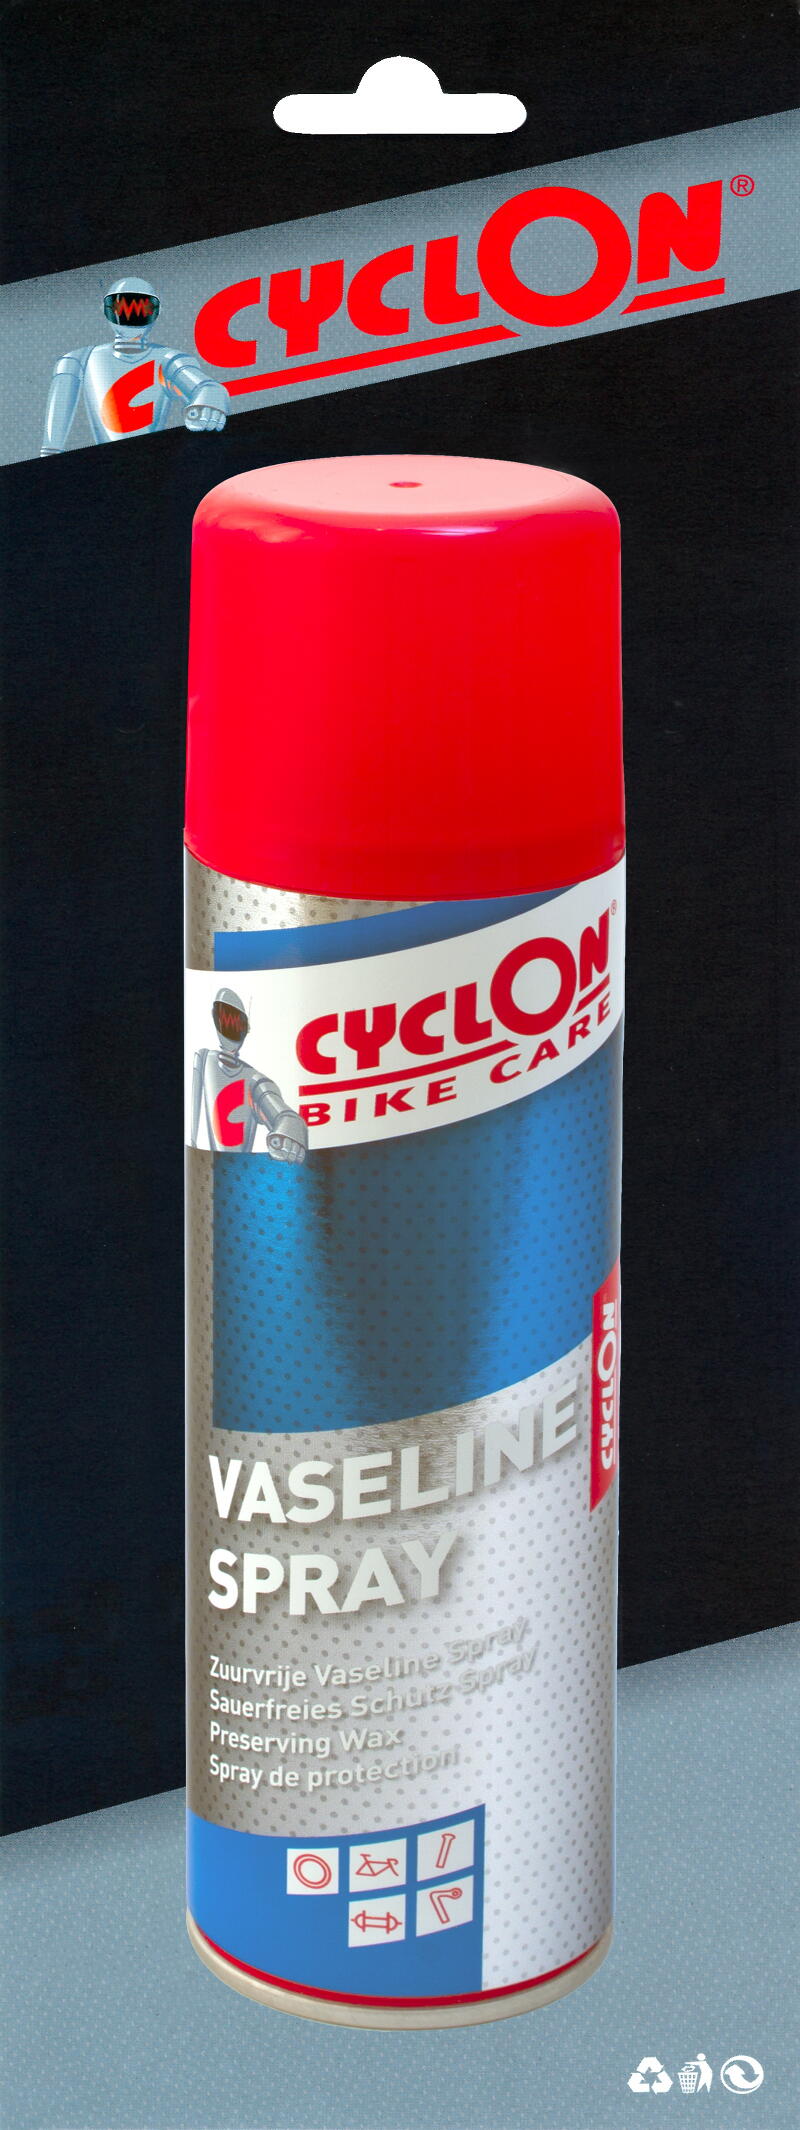 Cyclon Cyclon Vaseline Spray 250 ml